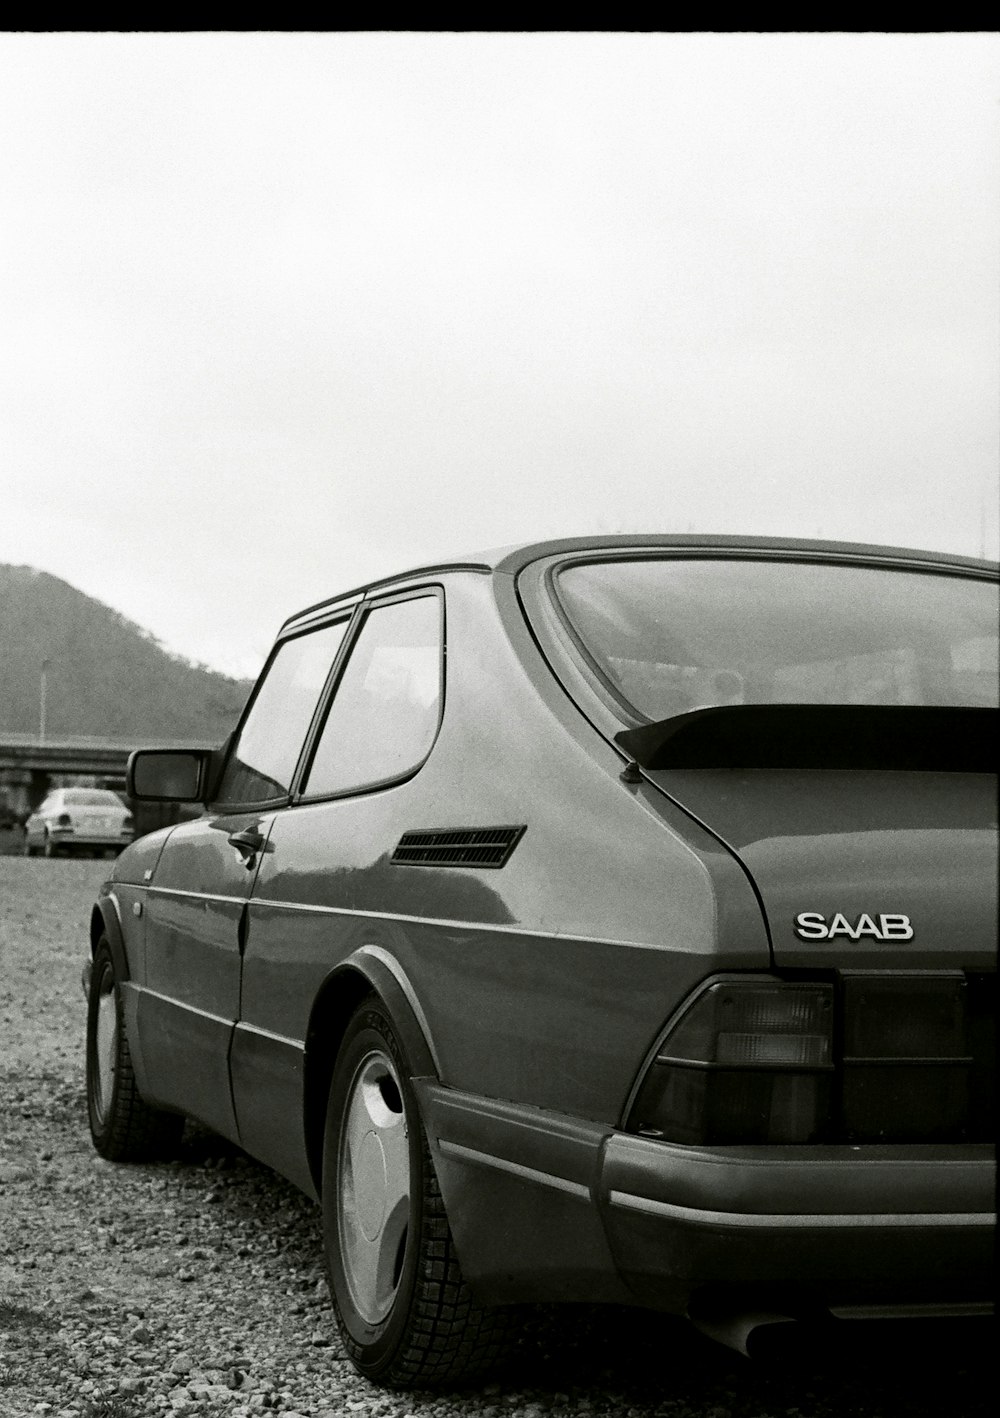 Una foto en blanco y negro de un coche Saab